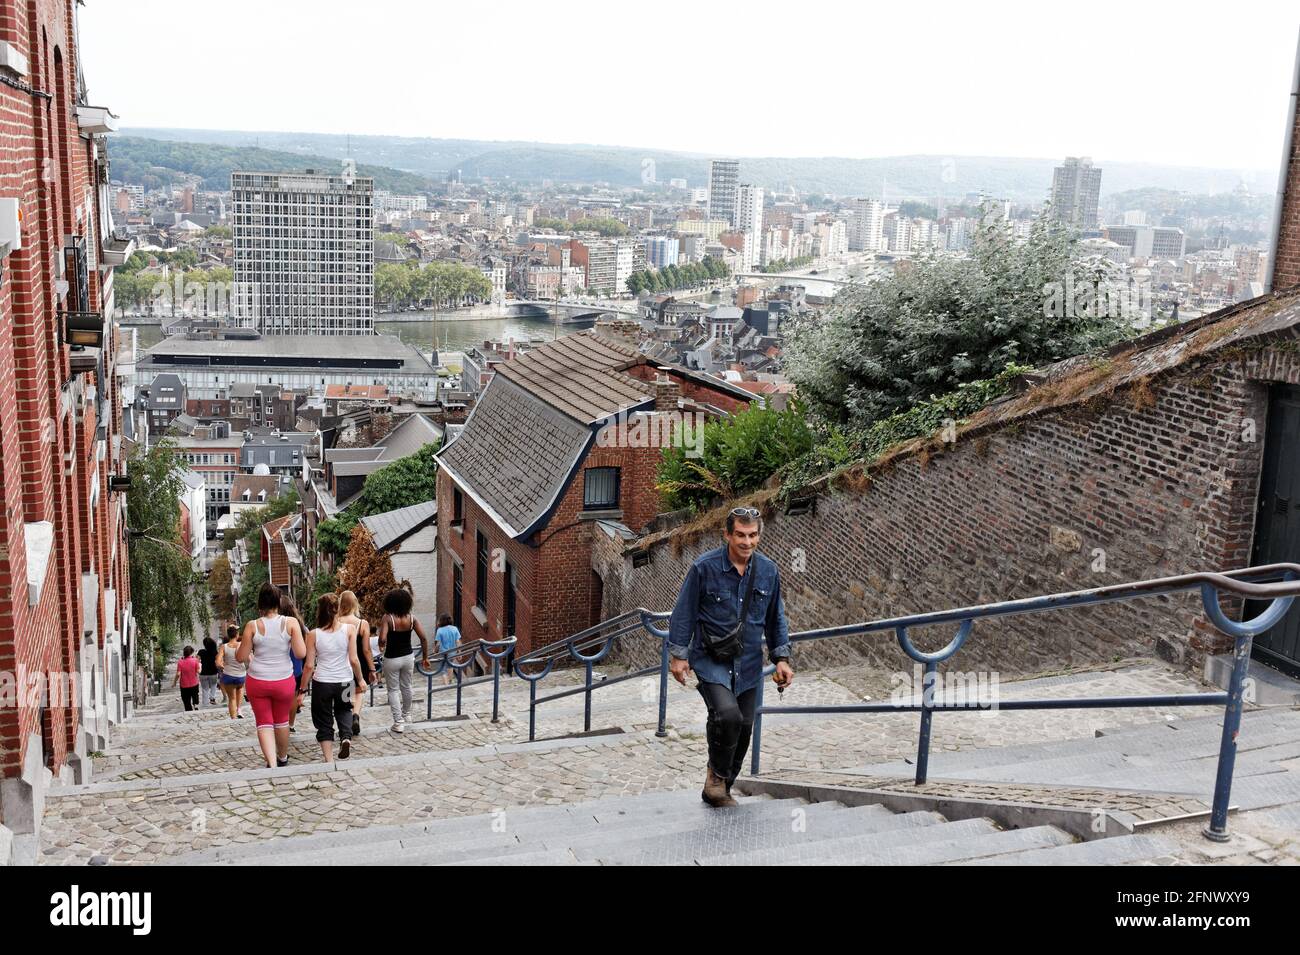 Montagne de Bueren, escalier de 374 marches, Liège, Belgique Stock Photo